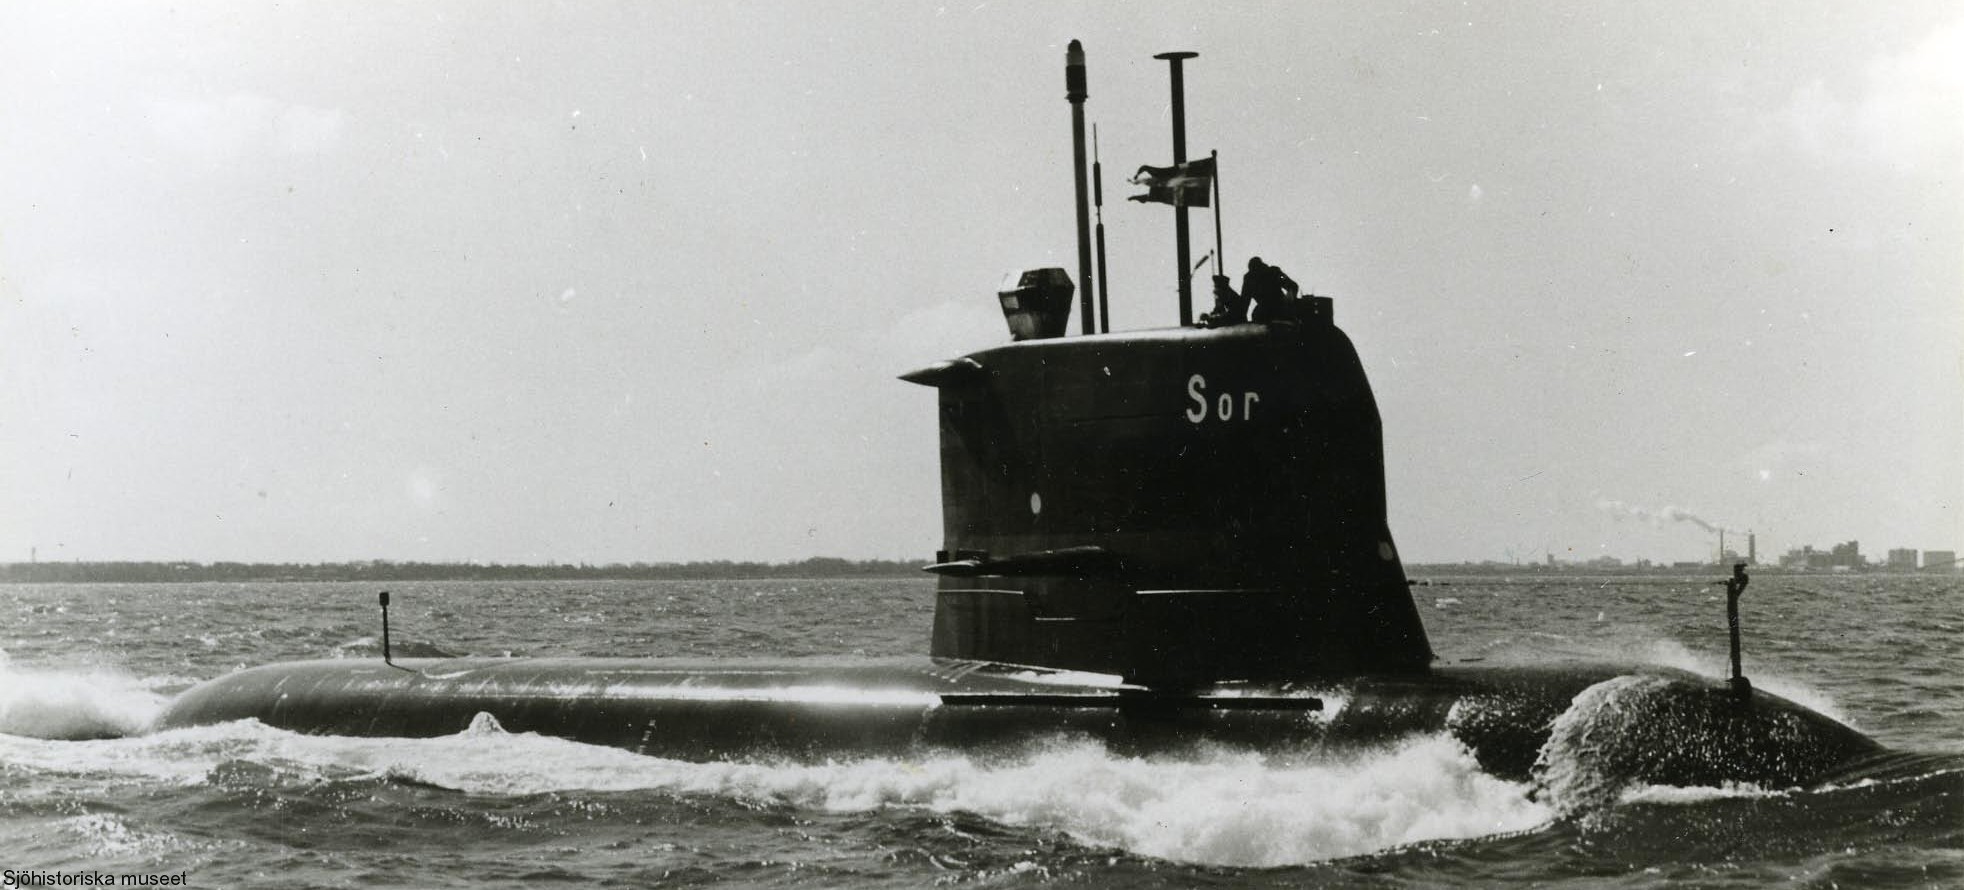 sjöormen a11 class submarine ssk swedish navy svenska marinen försvarsmakten kockums karlskronavarvet 07x